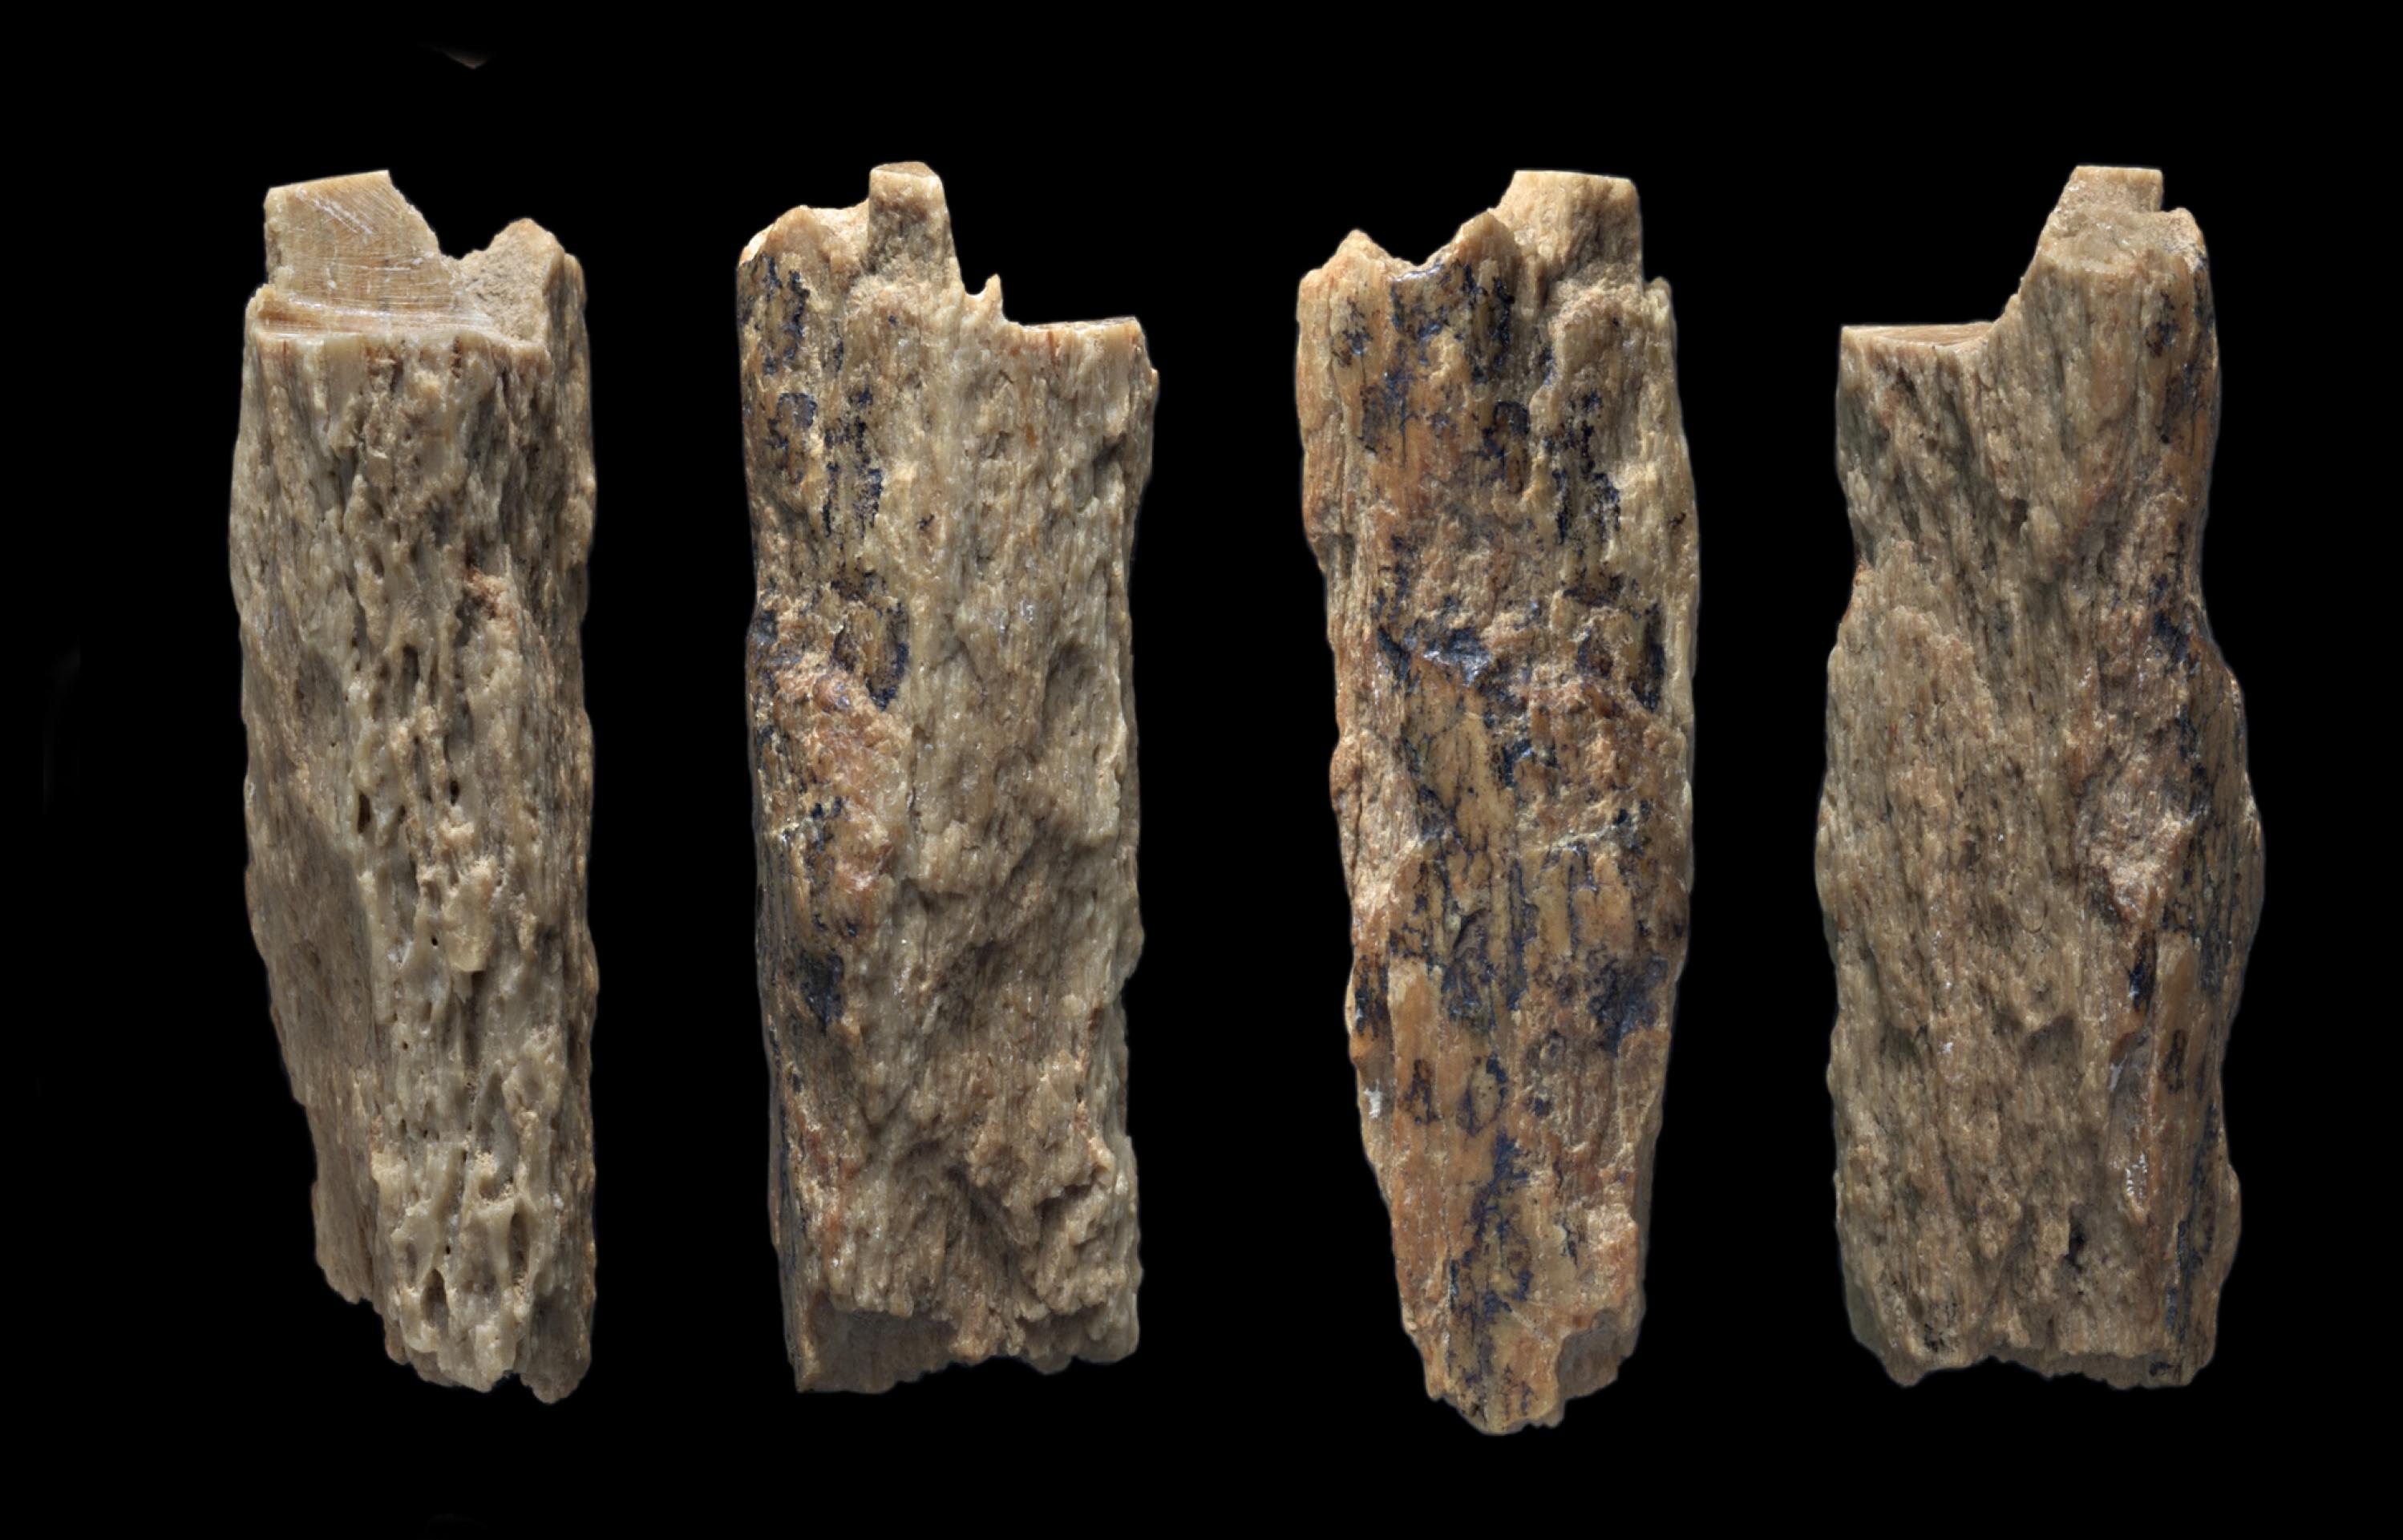 Auf dem Foto wird ein Knochenbruchstück gezeigt, das im Jahr 2012 in der Denisova-Höhle gefunden wurde und ein besonderes Geheimnis birgt. Es gehörte einst einer jungen Frau, deren Mutter Neandertalerin und deren Vater Denisova-Mensch war. Das ergab die Analyse ihrer Erbsubstanz.